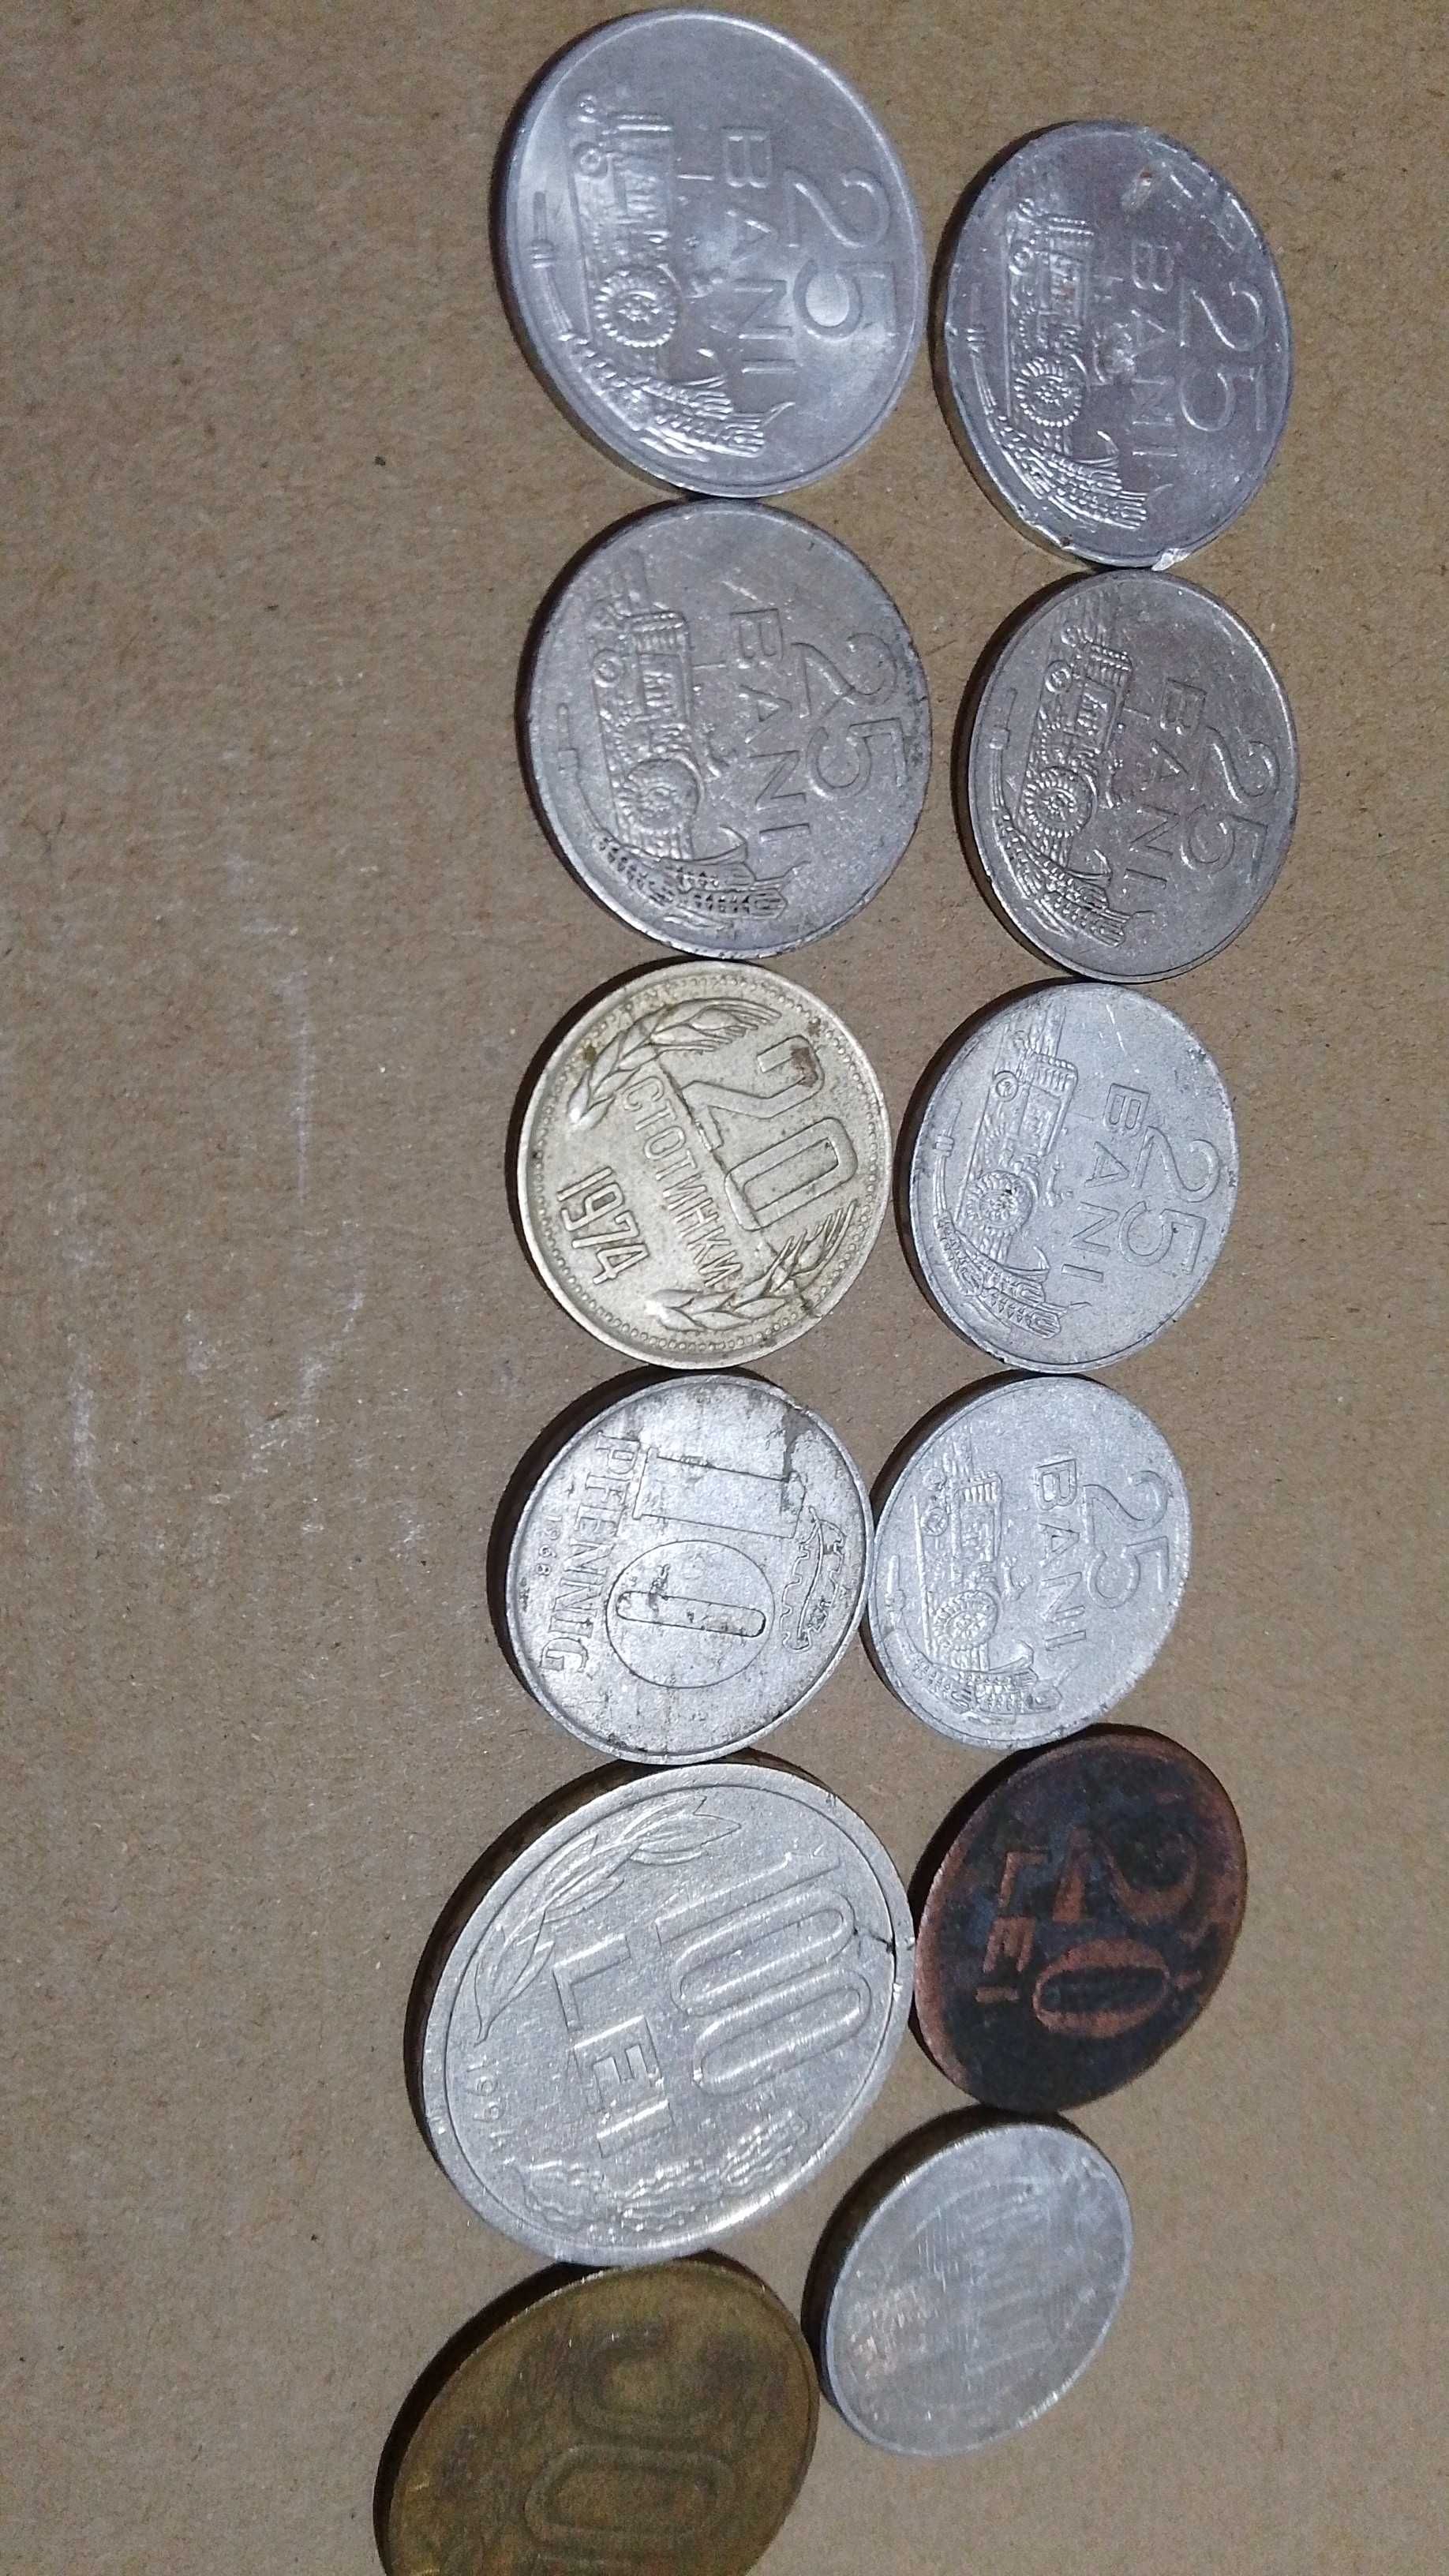 Monede vechi scoase din uz